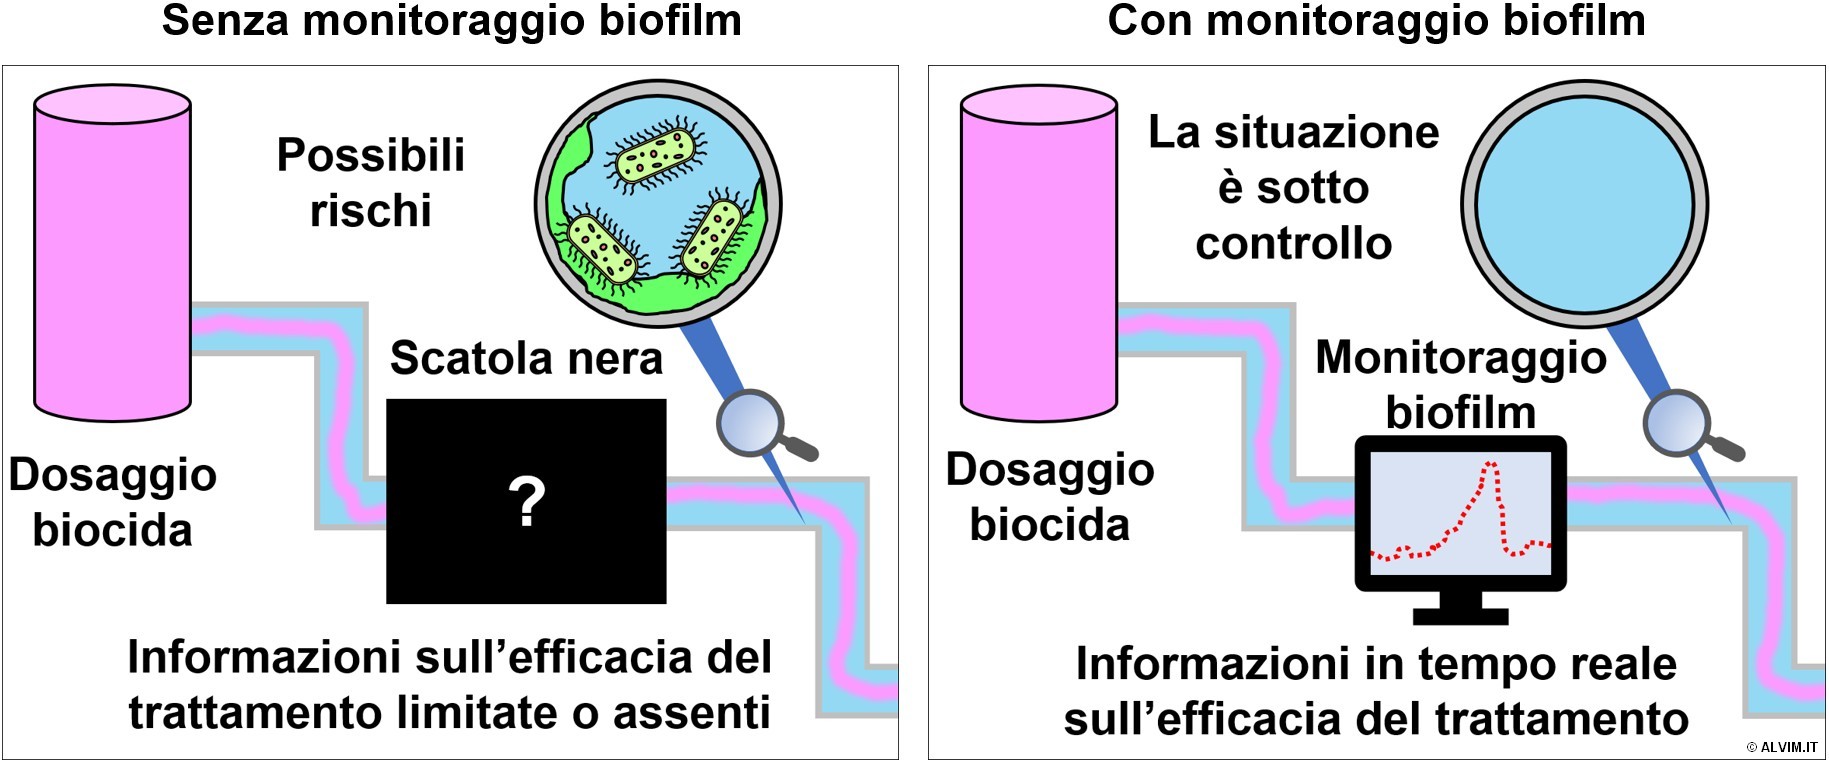 Importanza del monitoraggio biofilm per valutare l'efficacia del protocollo di sanificazione